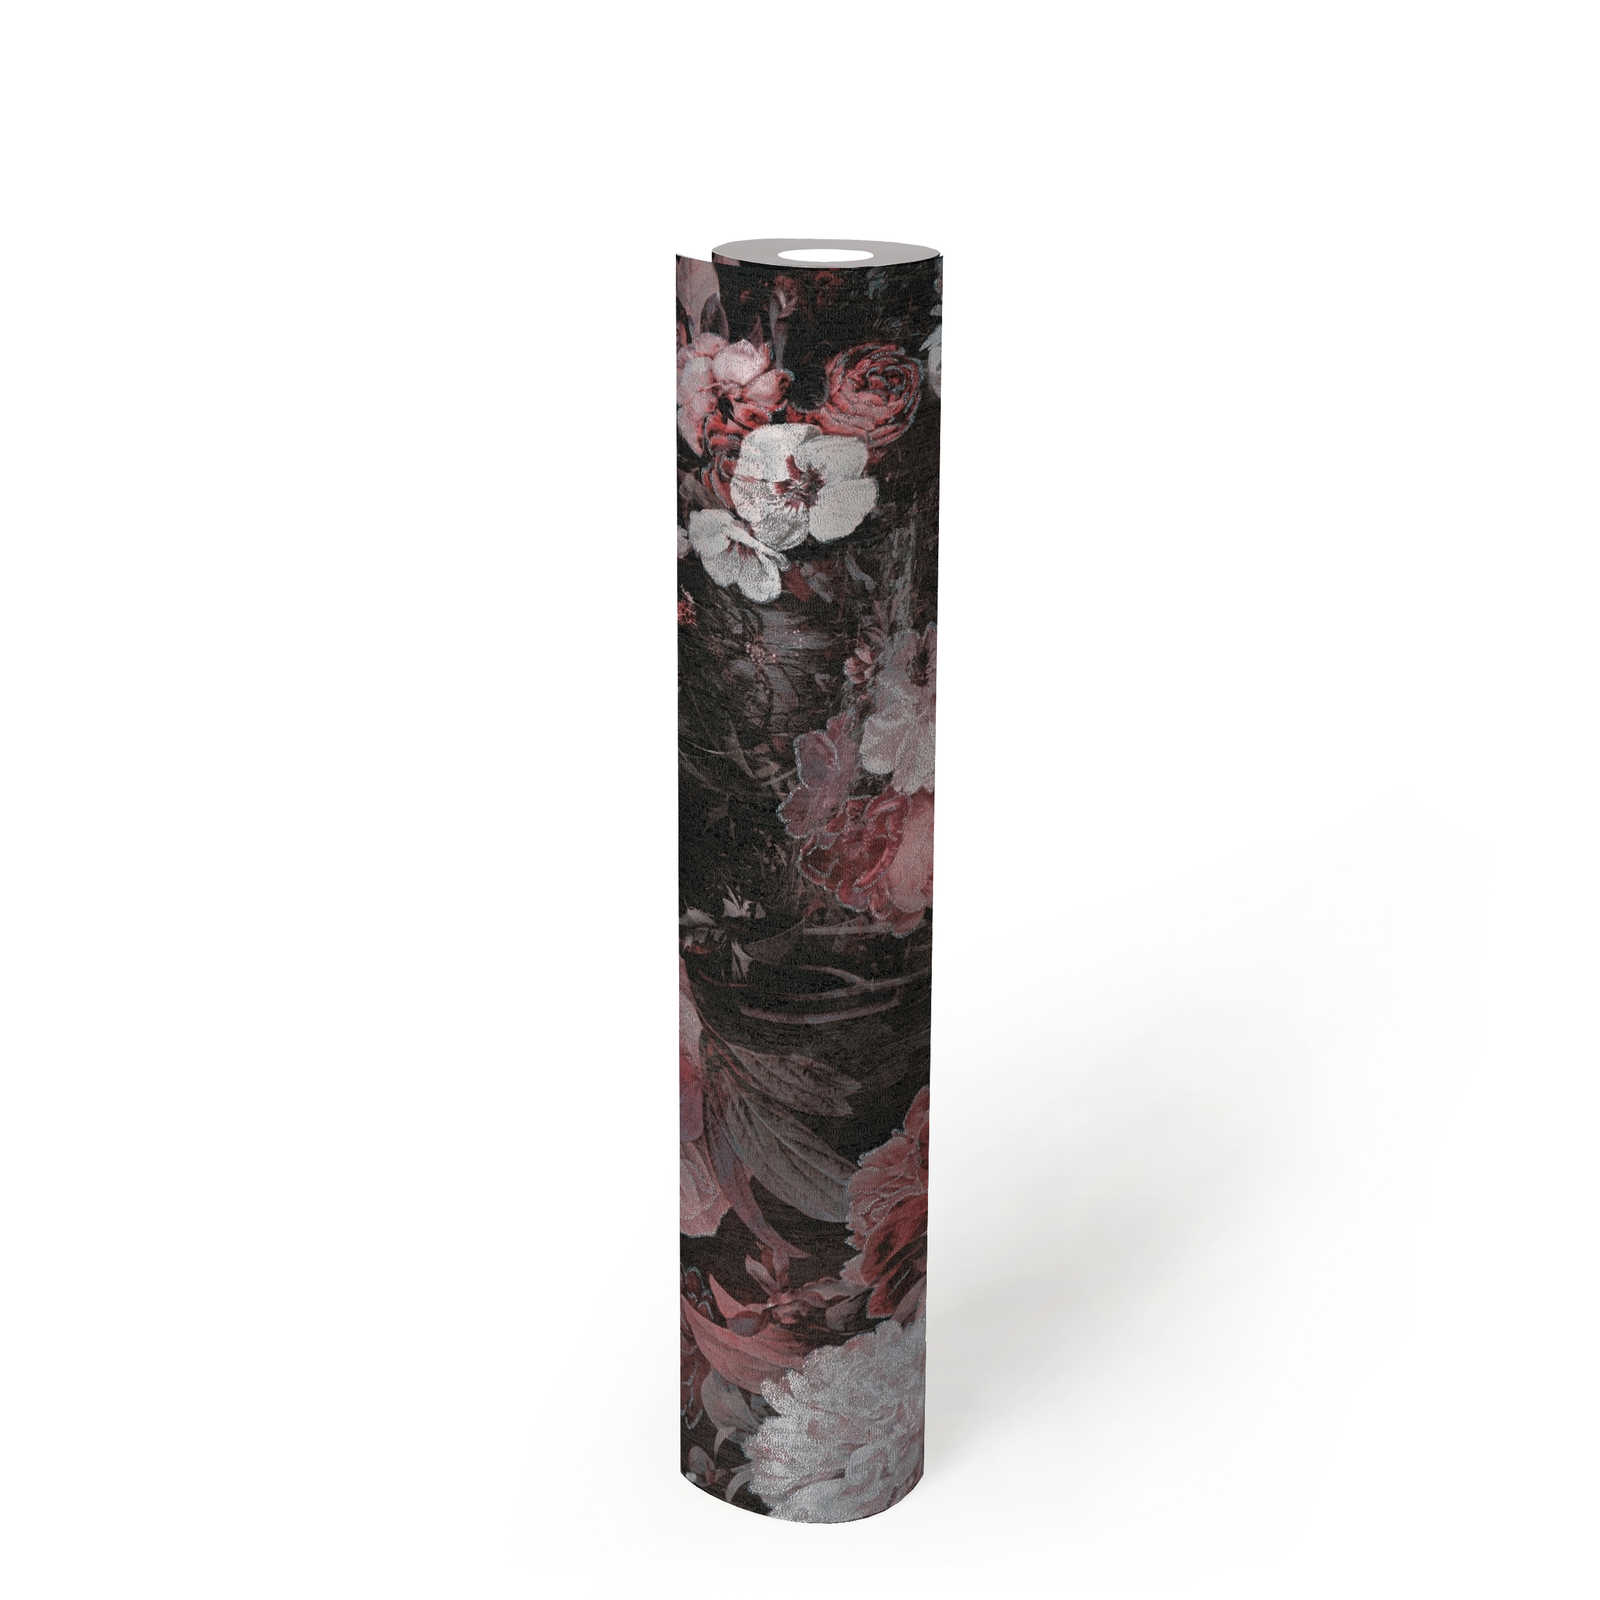             Papel pintado de rosas de estilo vintage - metálico, negro, blanco
        